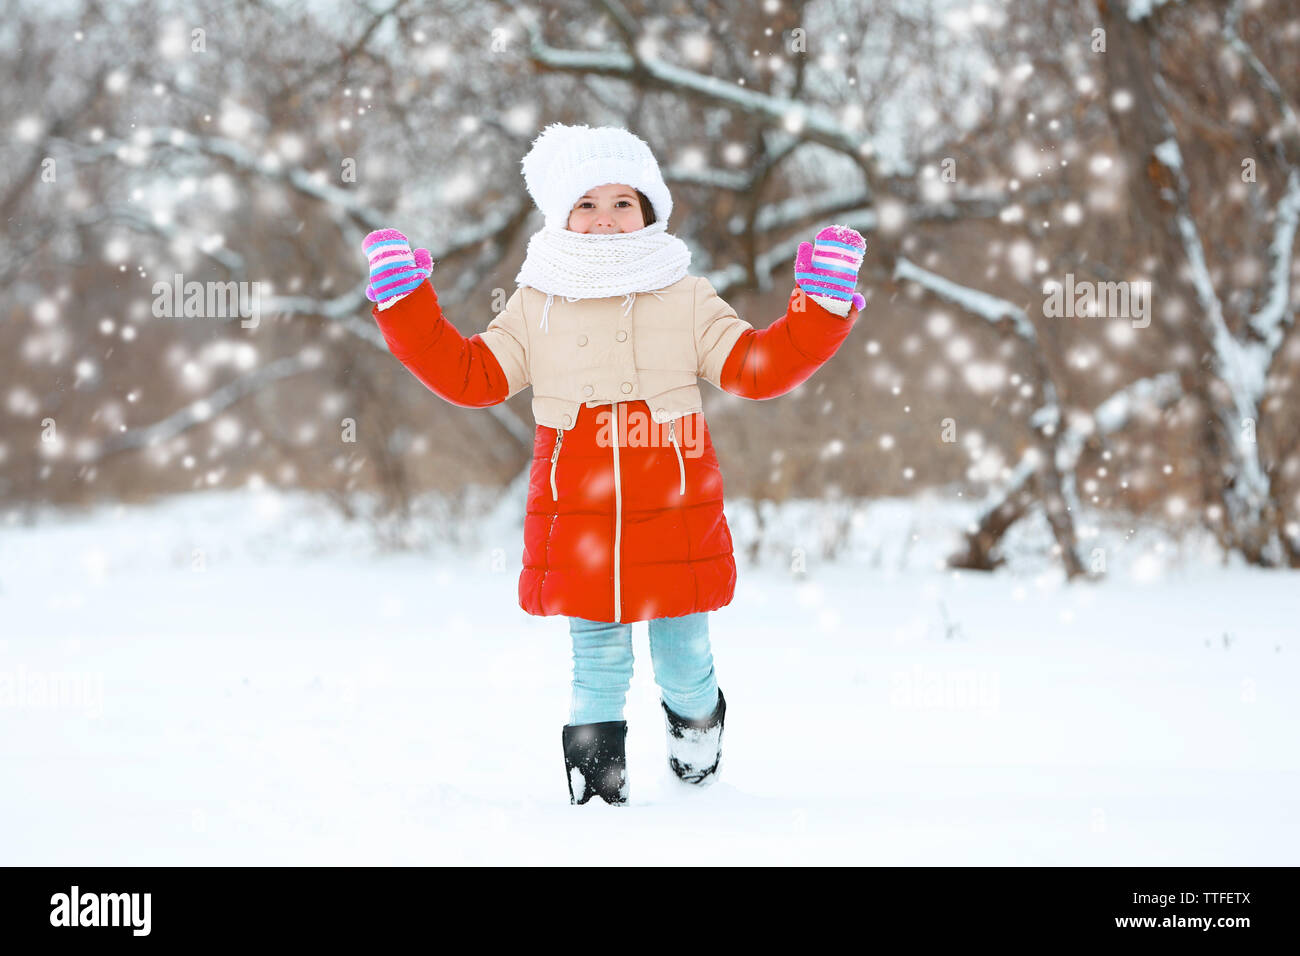 https://c8.alamy.com/comp/TTFETX/little-girl-with-winter-clothes-going-through-deep-snow-in-park-outdoor-TTFETX.jpg